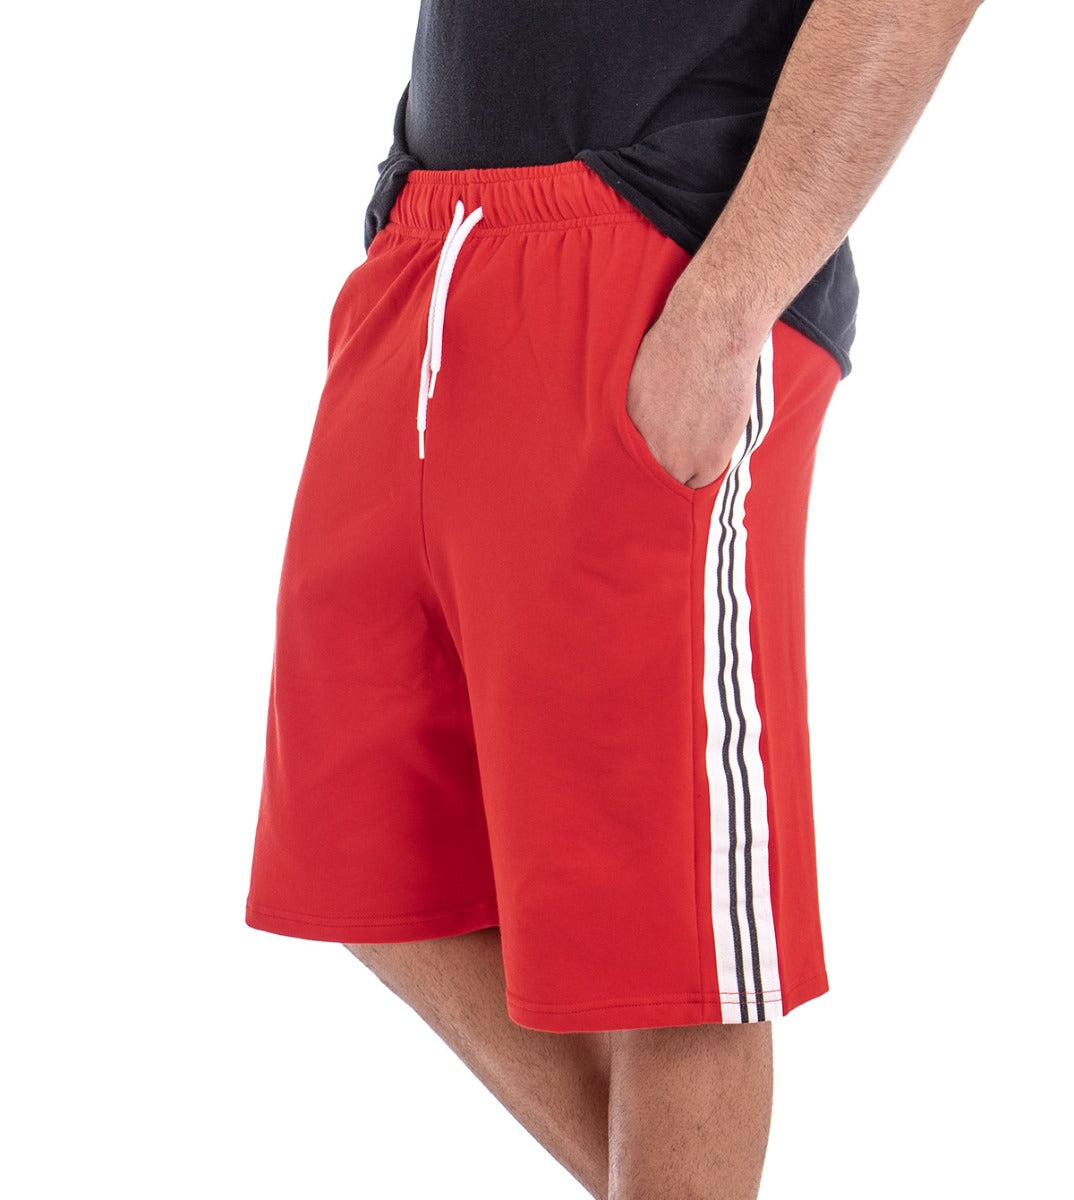 Bermuda Pantaloncino Uomo Corto Tuta Tinta Unita Rosso GIOSAL-PC1273A